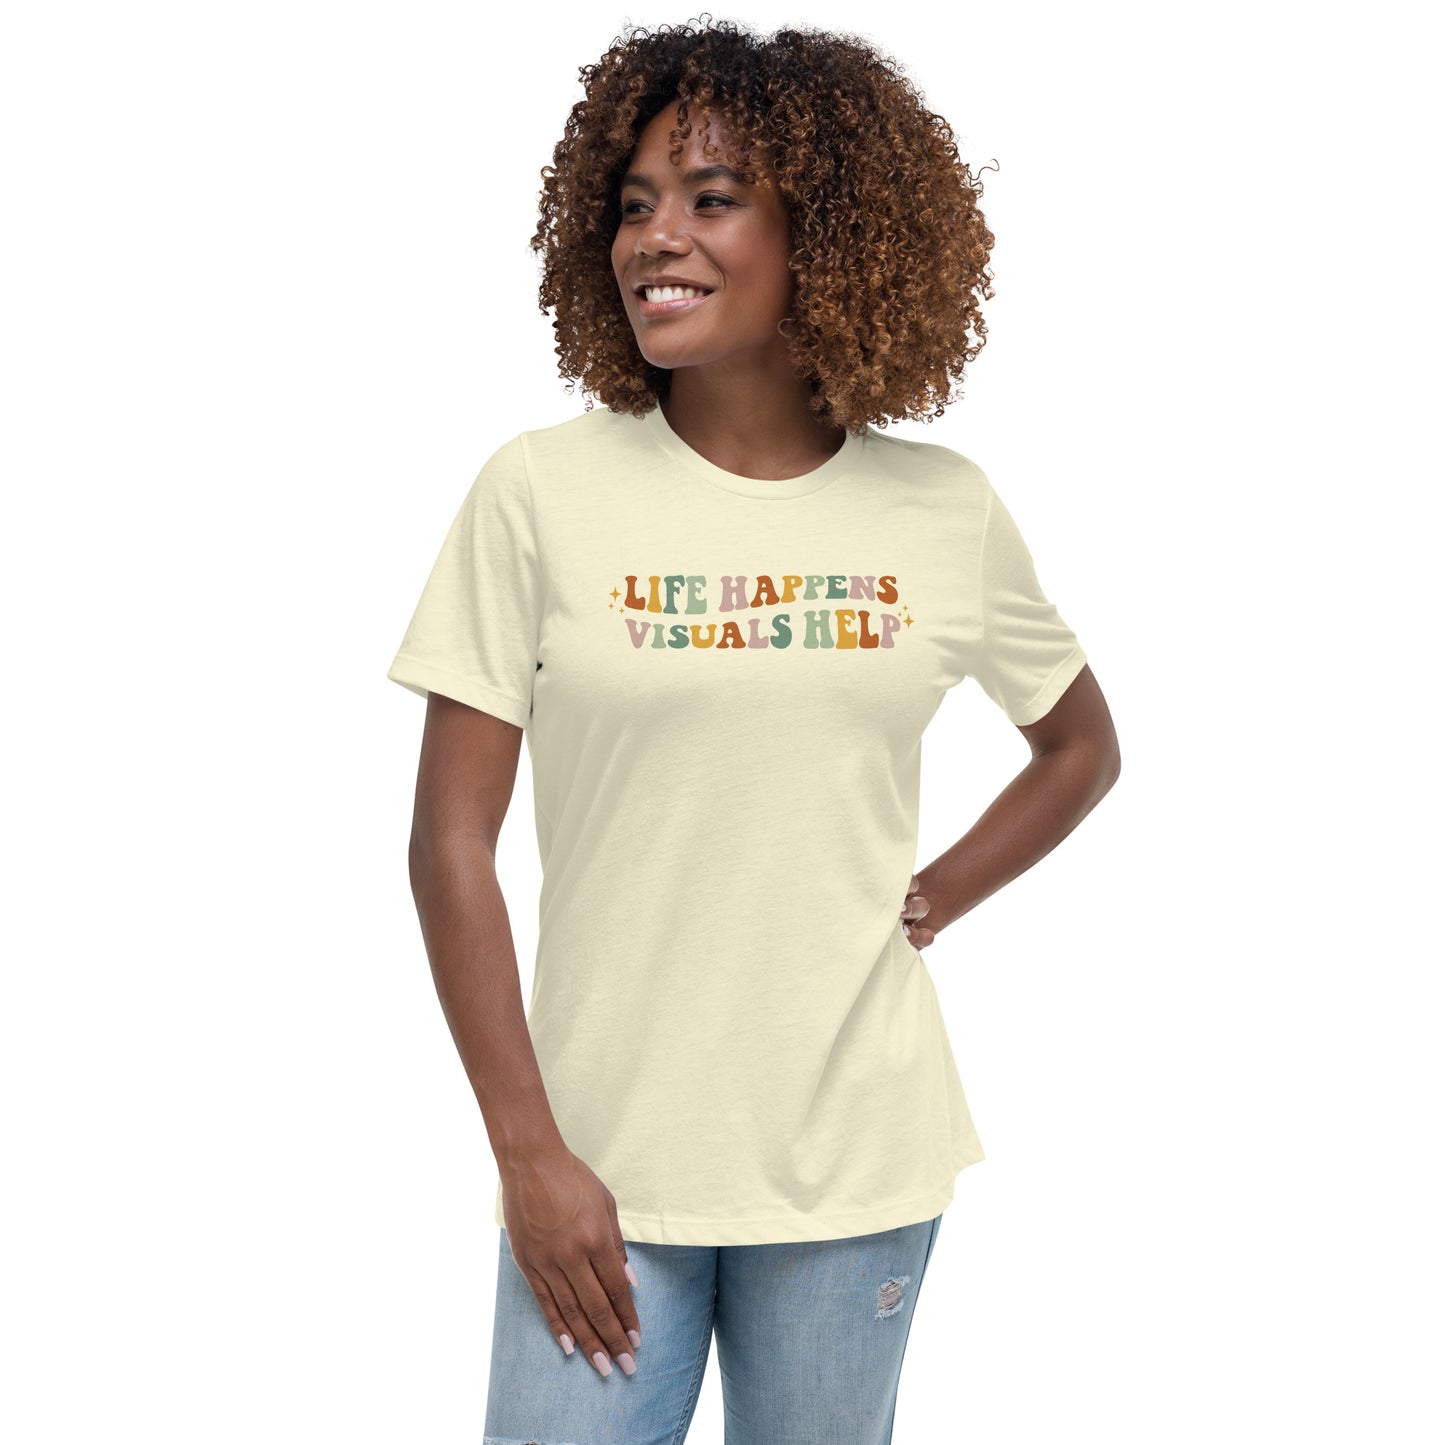 Life Happens, Visuals Help - Women’s T-shirt